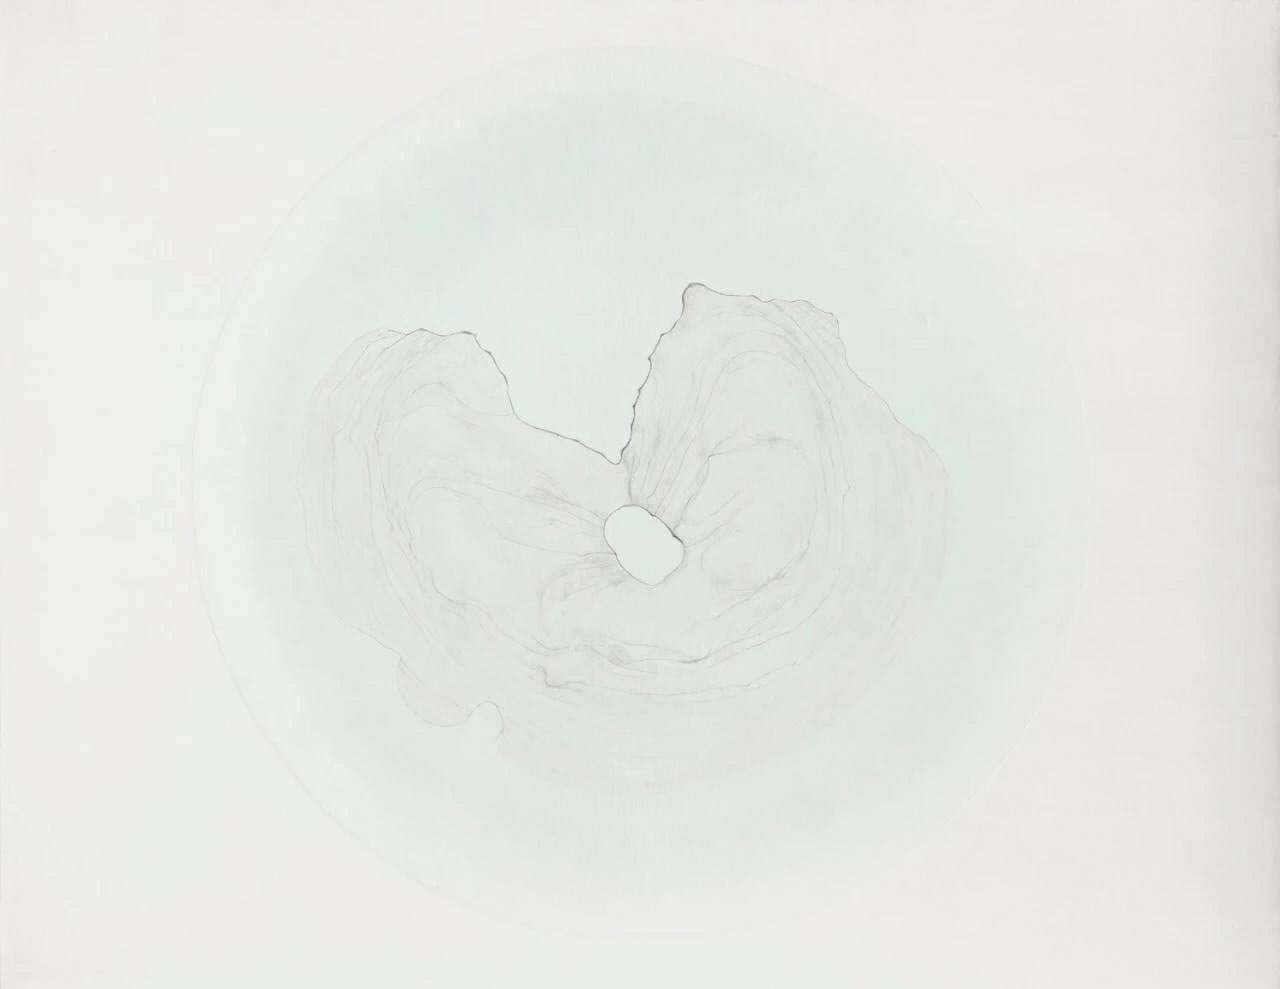 朱昱,《茶渍 t21》, 2013,布面油画,140 x 180 cm